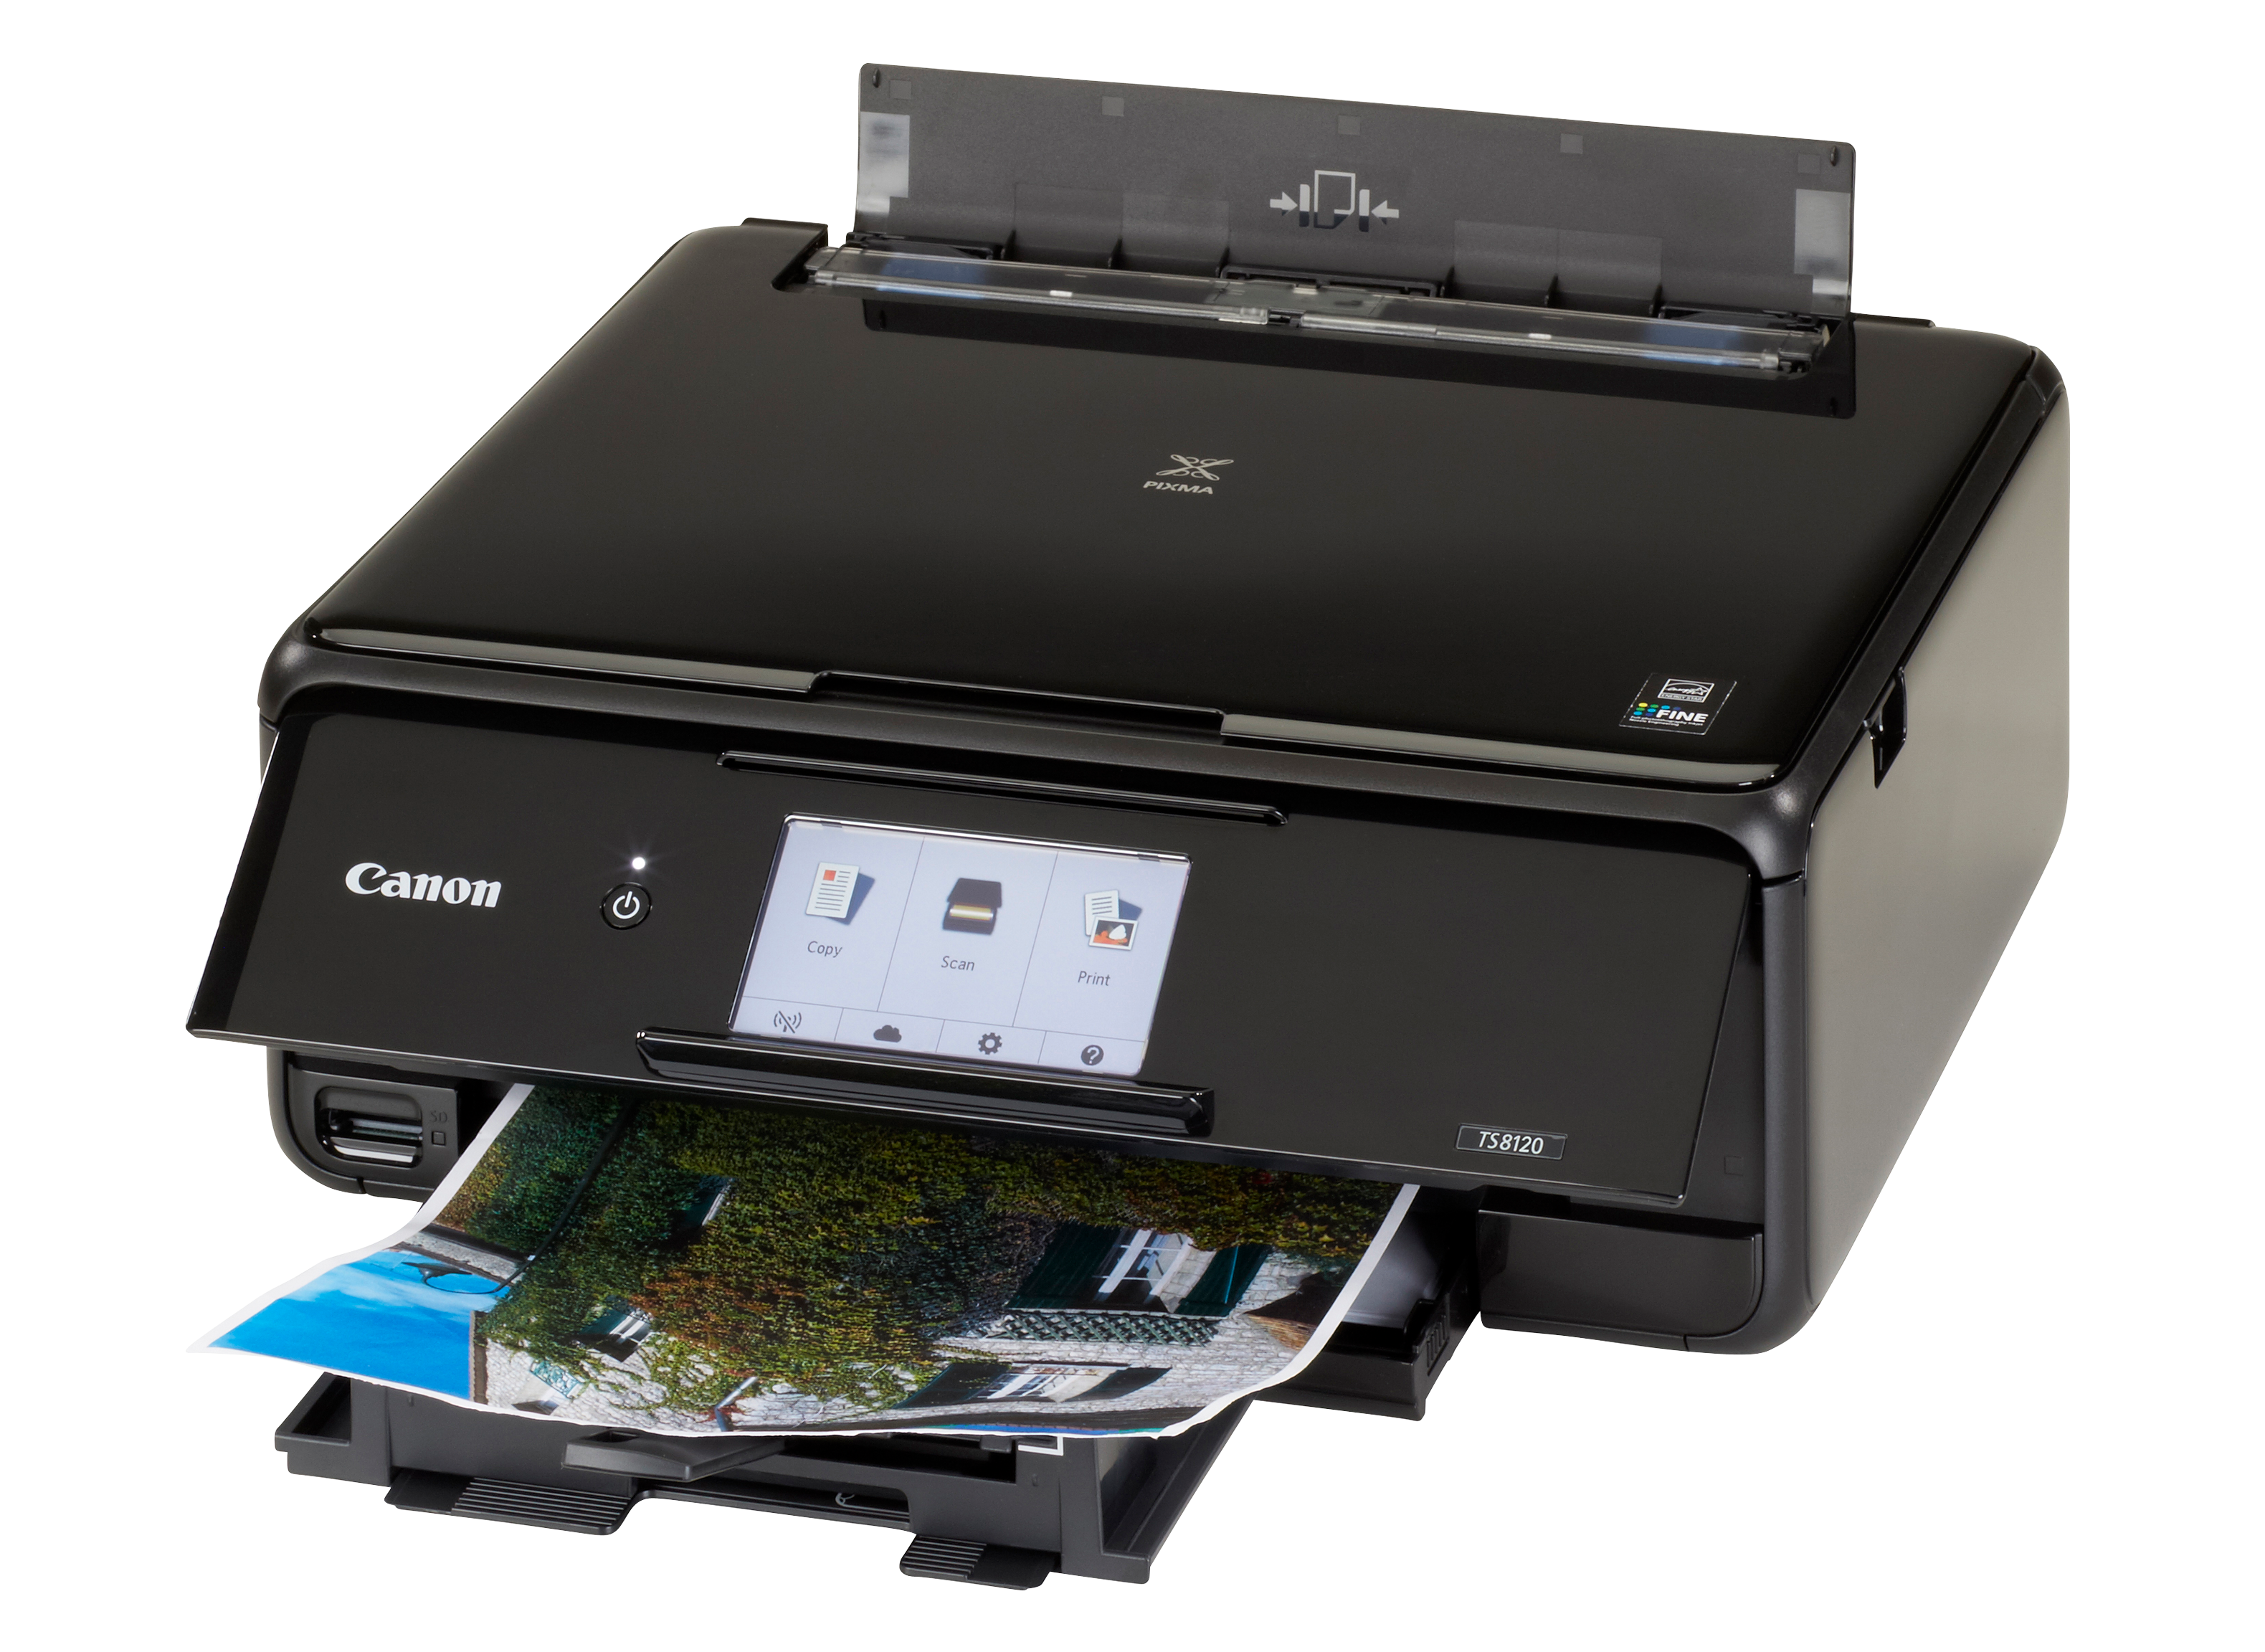 Canon PIXMA Printer Review - Consumer Reports